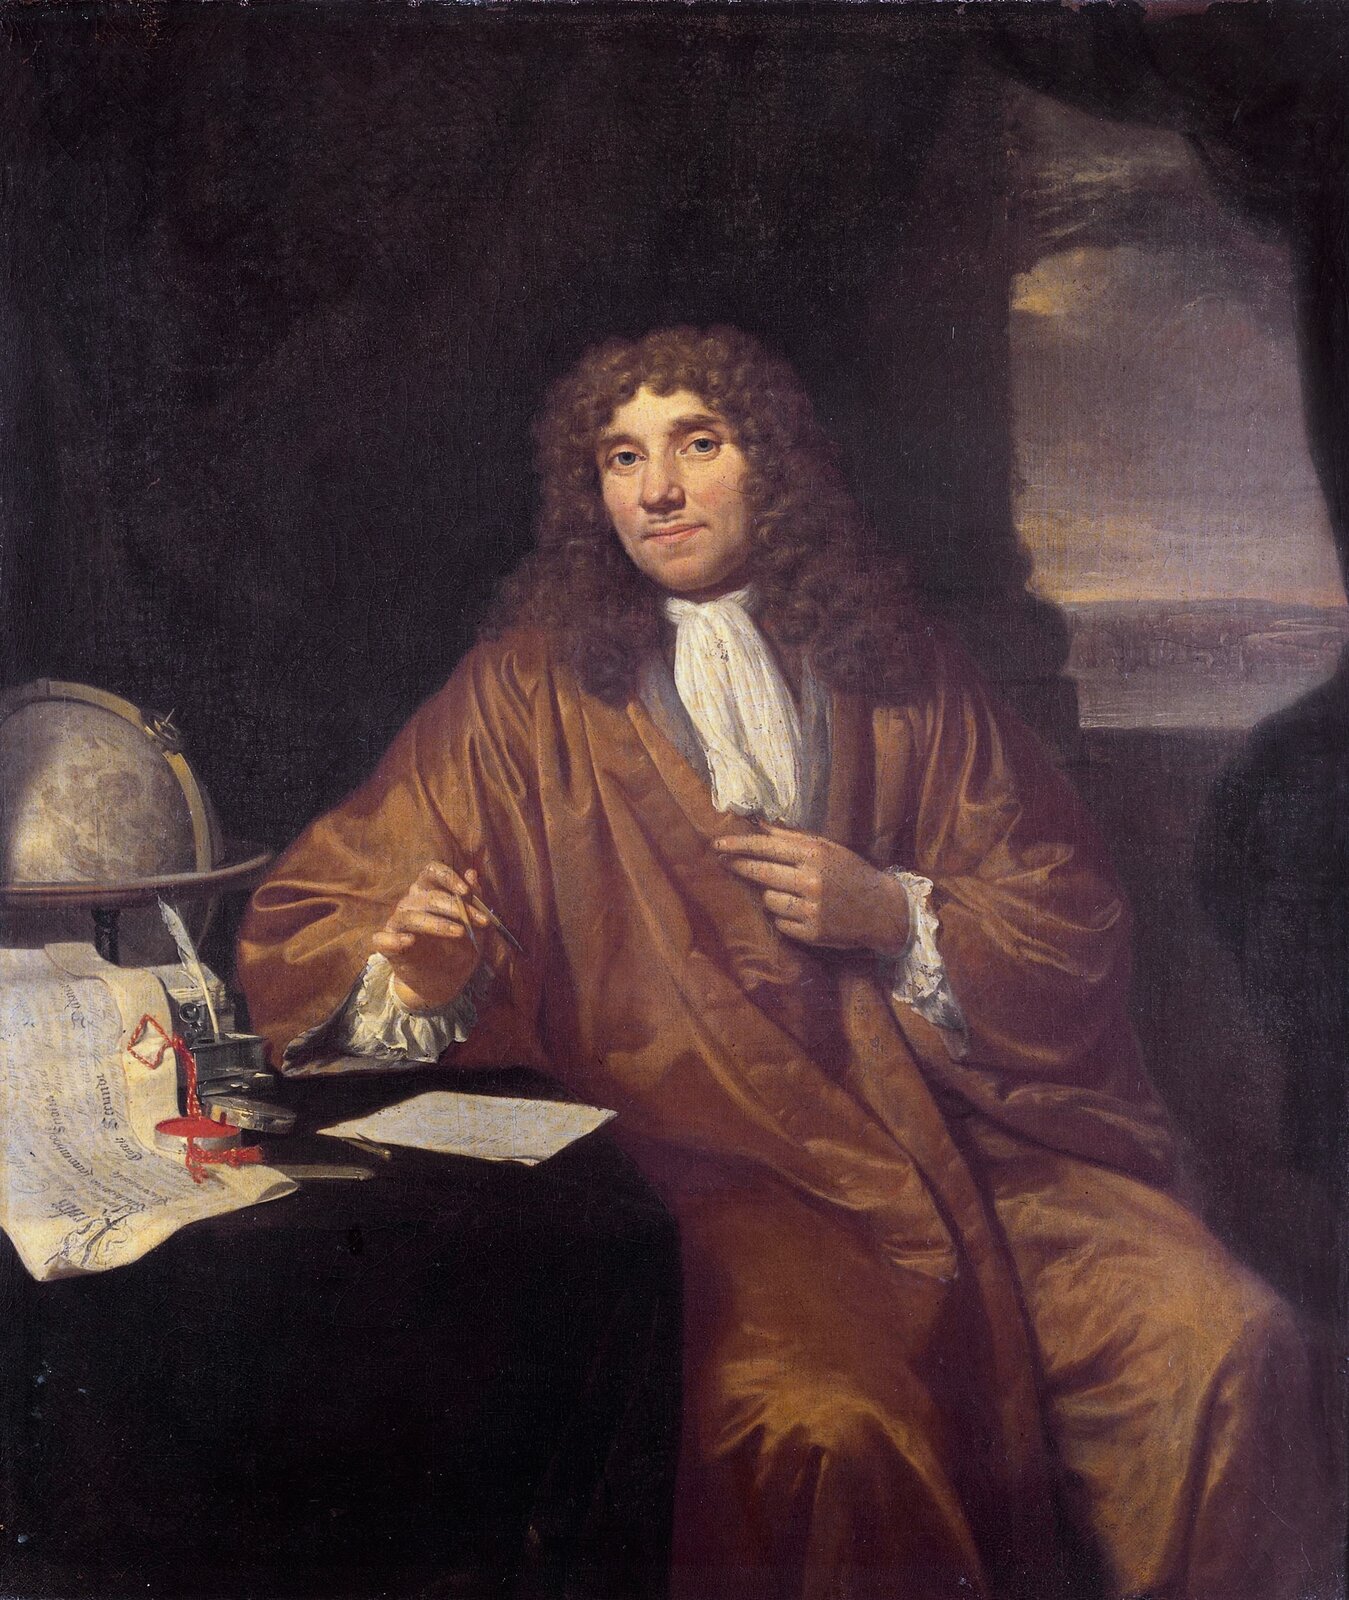 Ilustracja przedstawia portret mężczyzny w stroju historycznym. Strój ten to rodzaj długiego brązowego płaszcza. Mężczyzna siedzi bokiem przy stole, na którym widać na przykład kartki, mapy, globus. Na głowie ma perukę z długimi kręconymi lokami. Jest to Antonie van Leeuwenhoek.